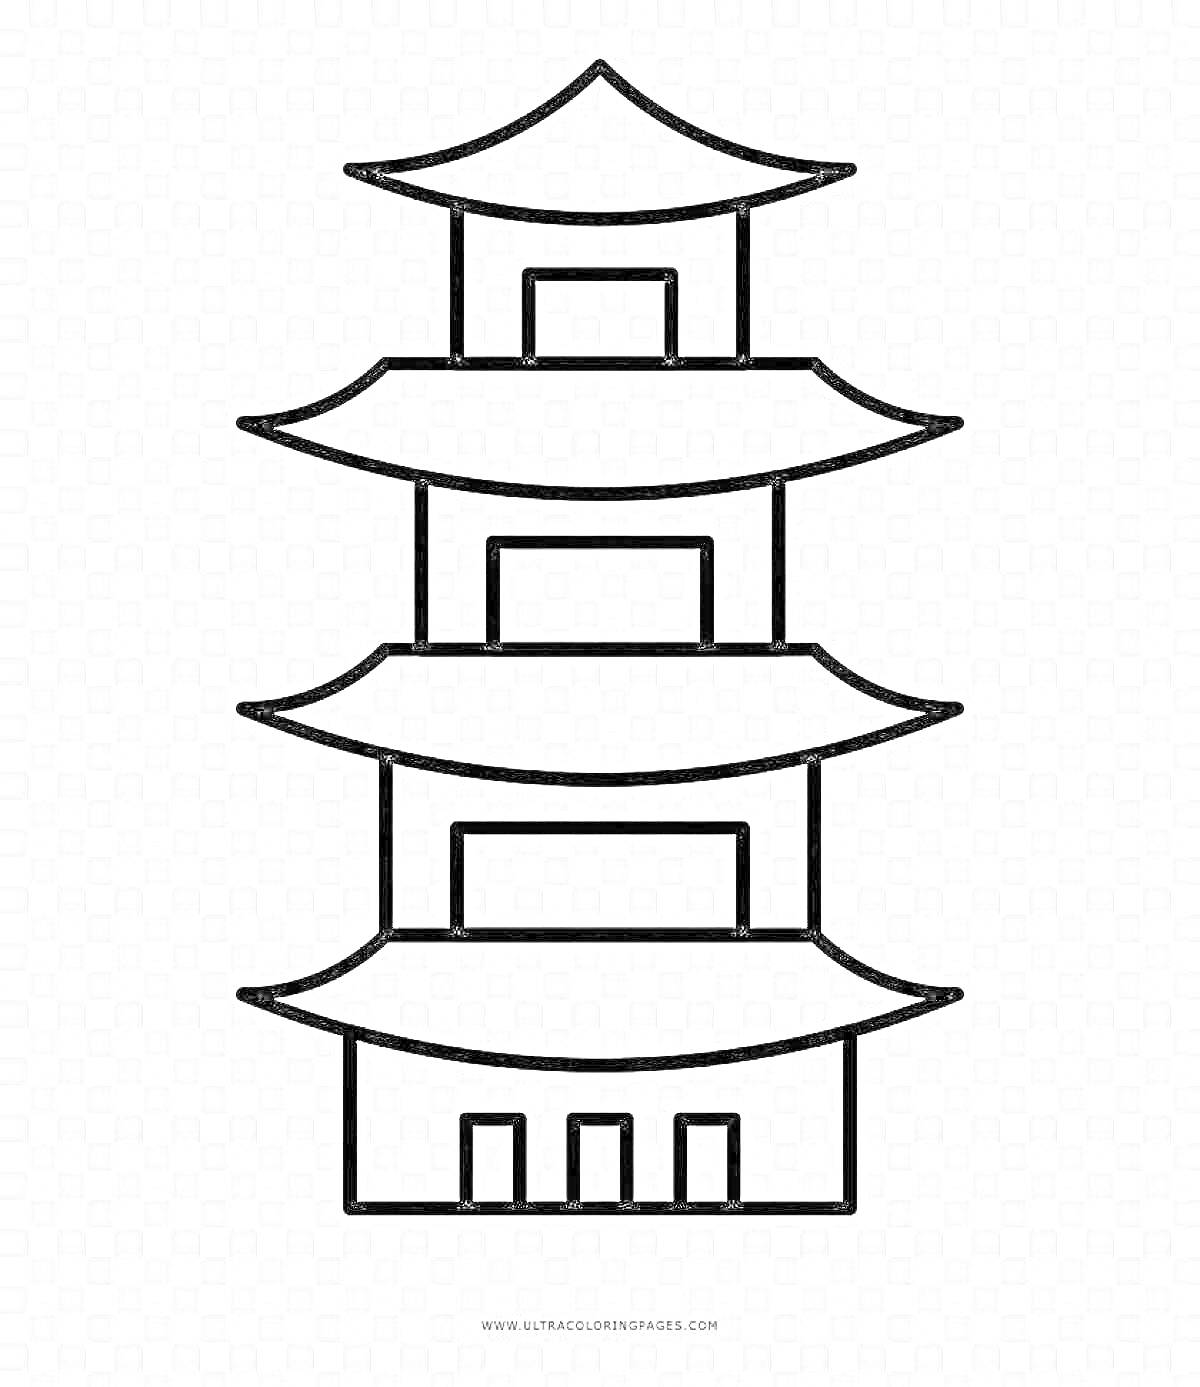 Раскраска Пятиуровневая пагода с традиционной многоскатной крышей и тремя дверьми на нижнем уровне.